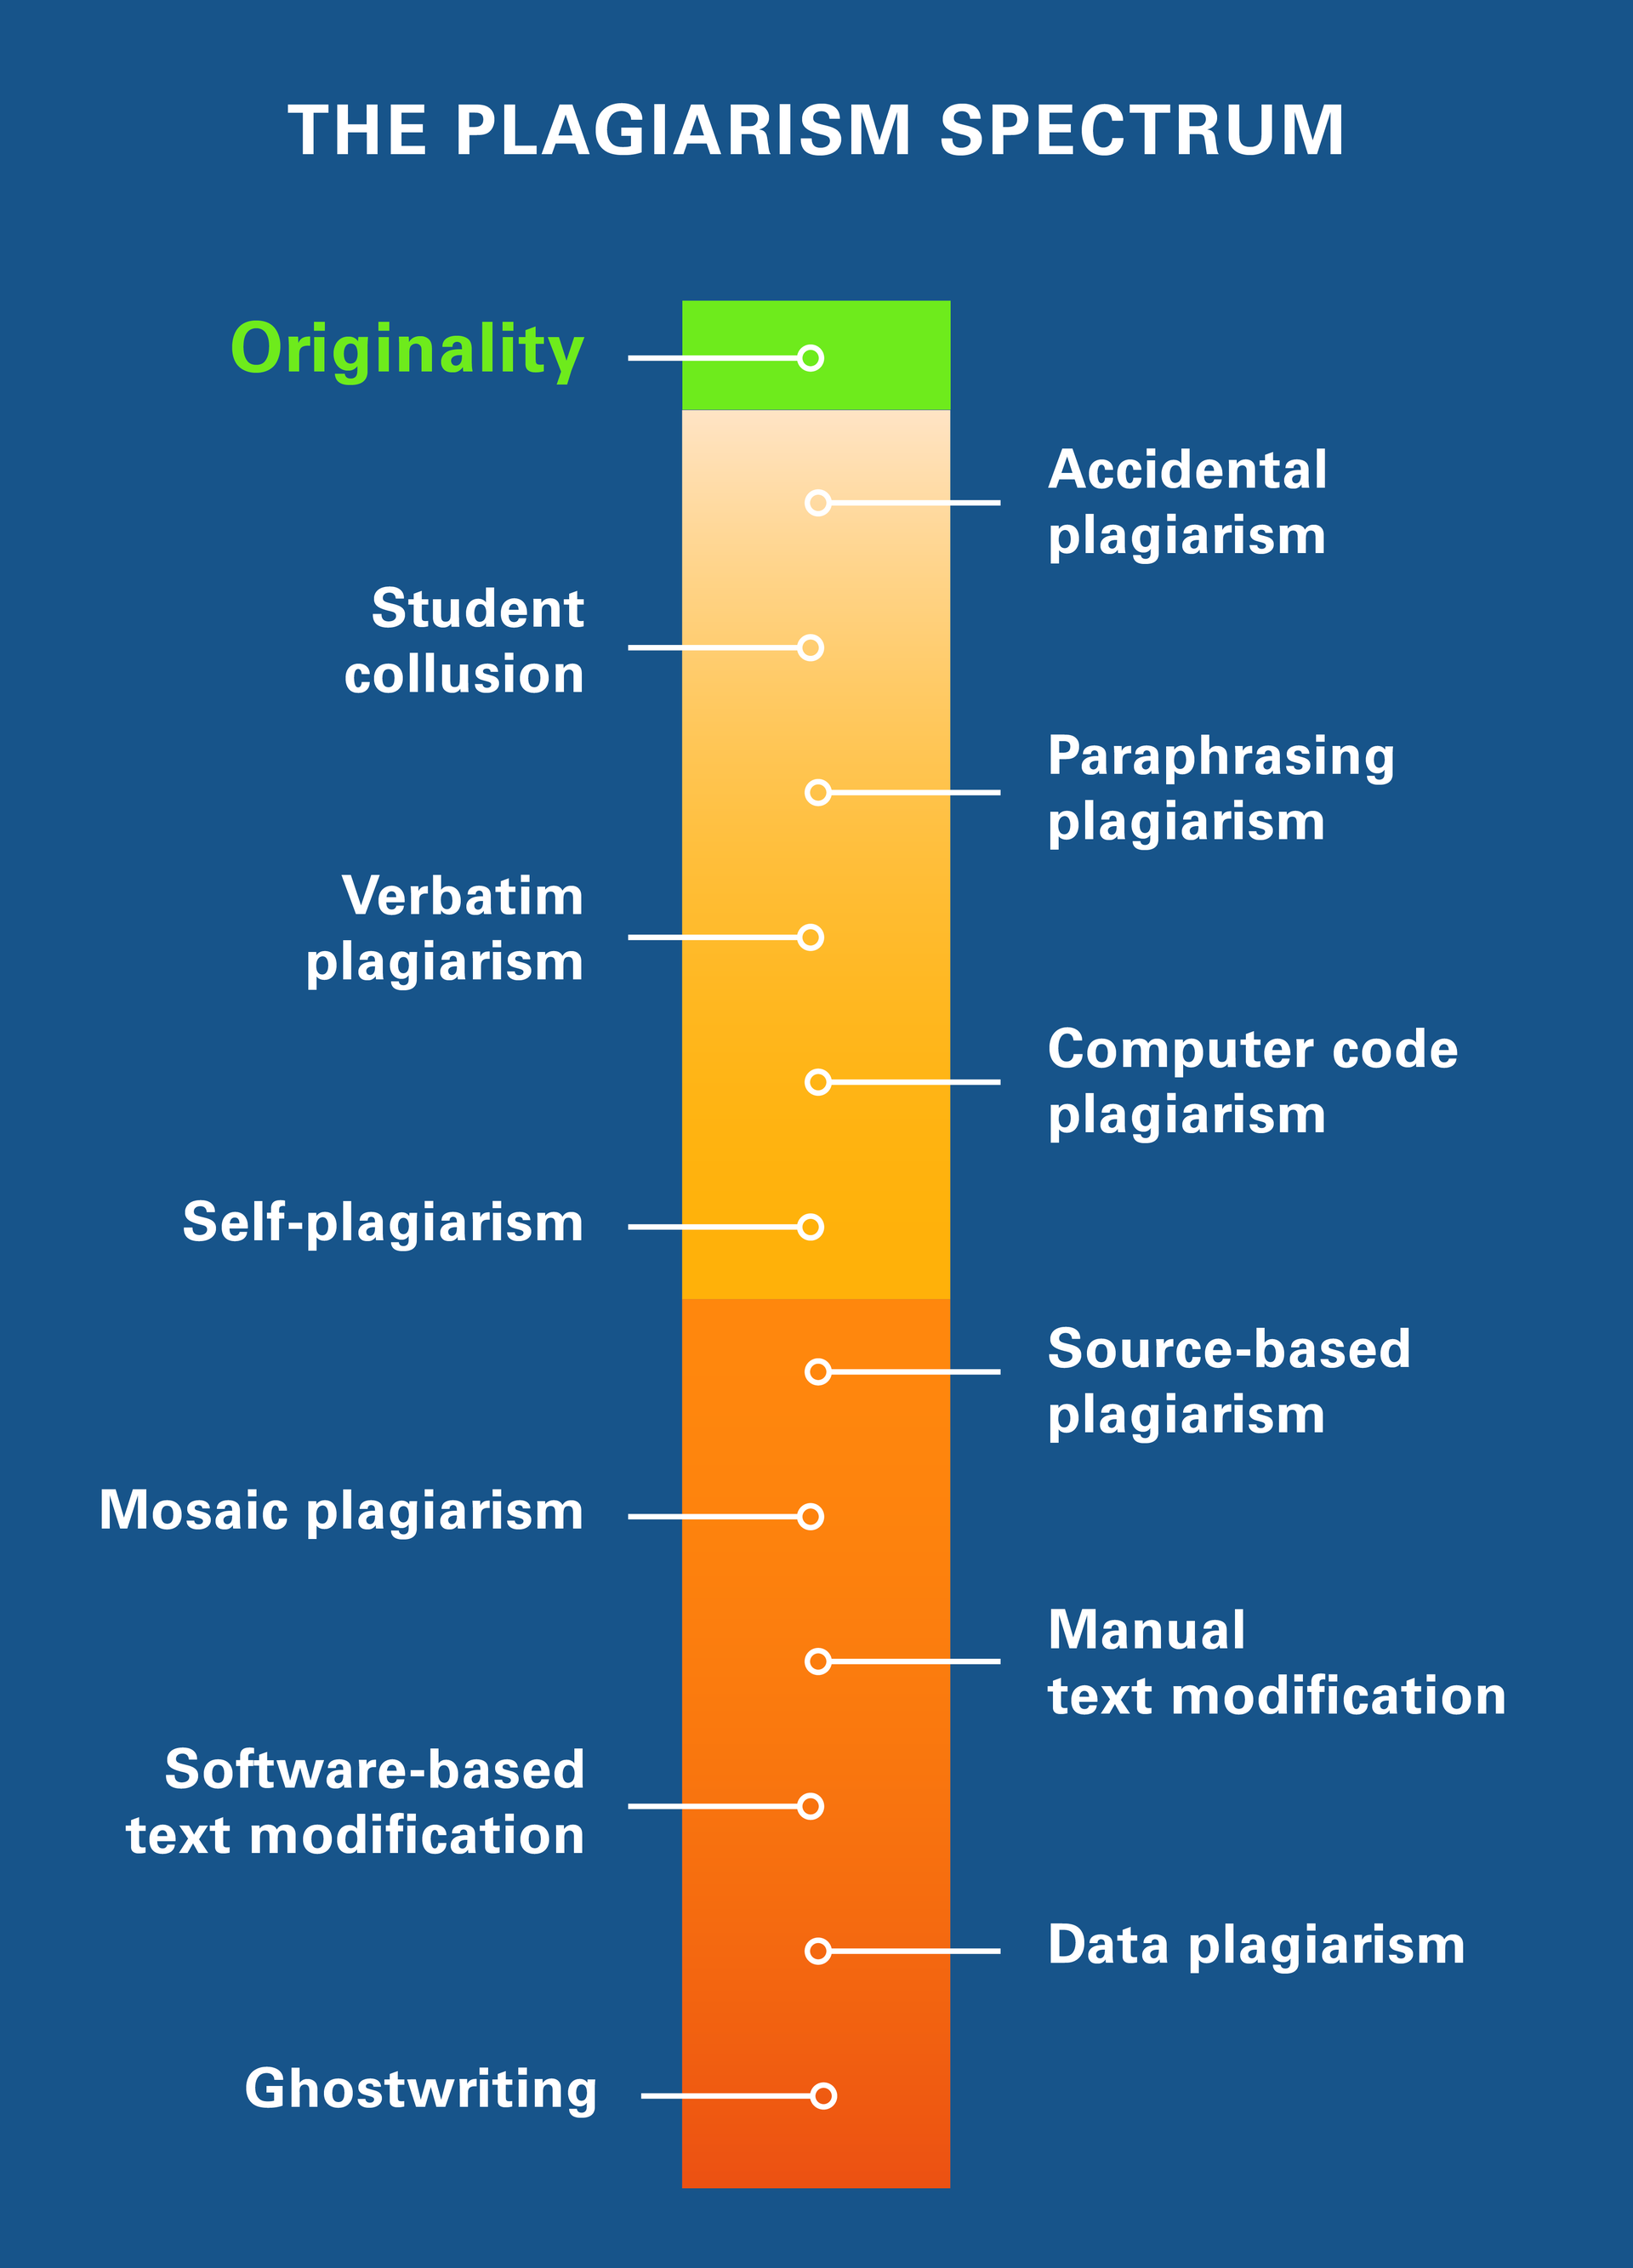 The plagiarism spectrum